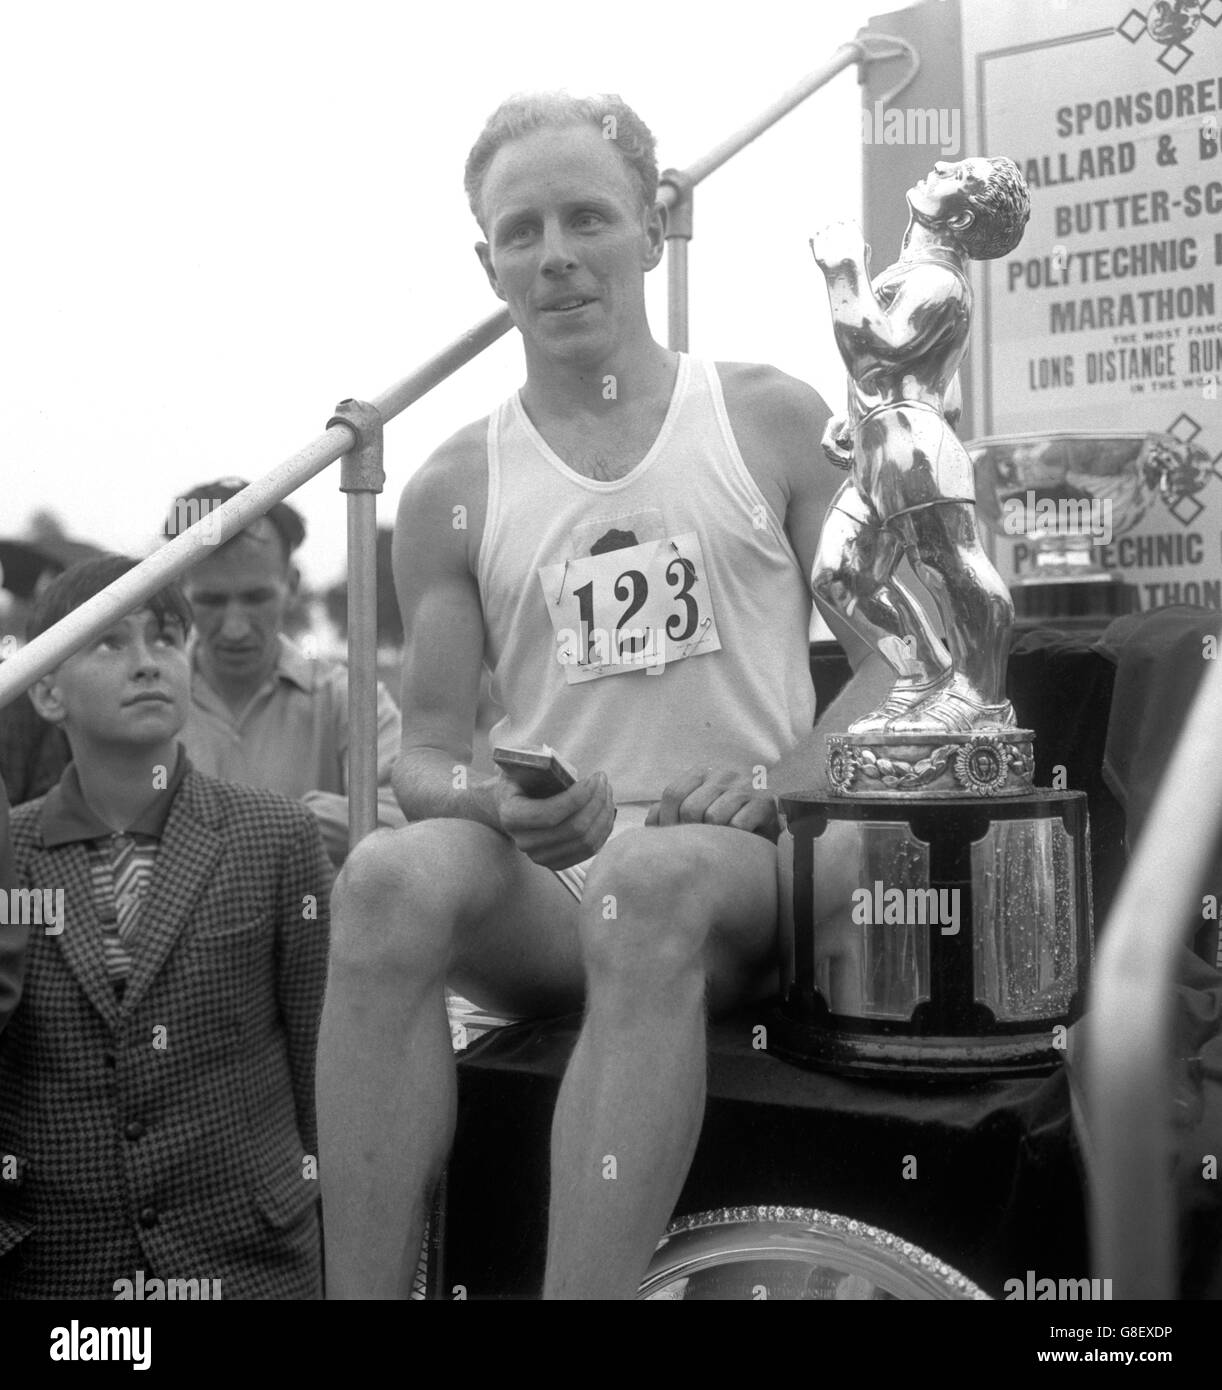 Basil Heatley de Coventry Godiva Harriers avec le trophée après avoir remporté le Marathon Poly (Polytechnique) de Windsor à Chiswick dans le nouveau monde record de 2 heures, 13 minutes, 55 secondes.La course est organisée dans le cadre de la rencontre d'athlétisme du trophée Kinnaird. Banque D'Images